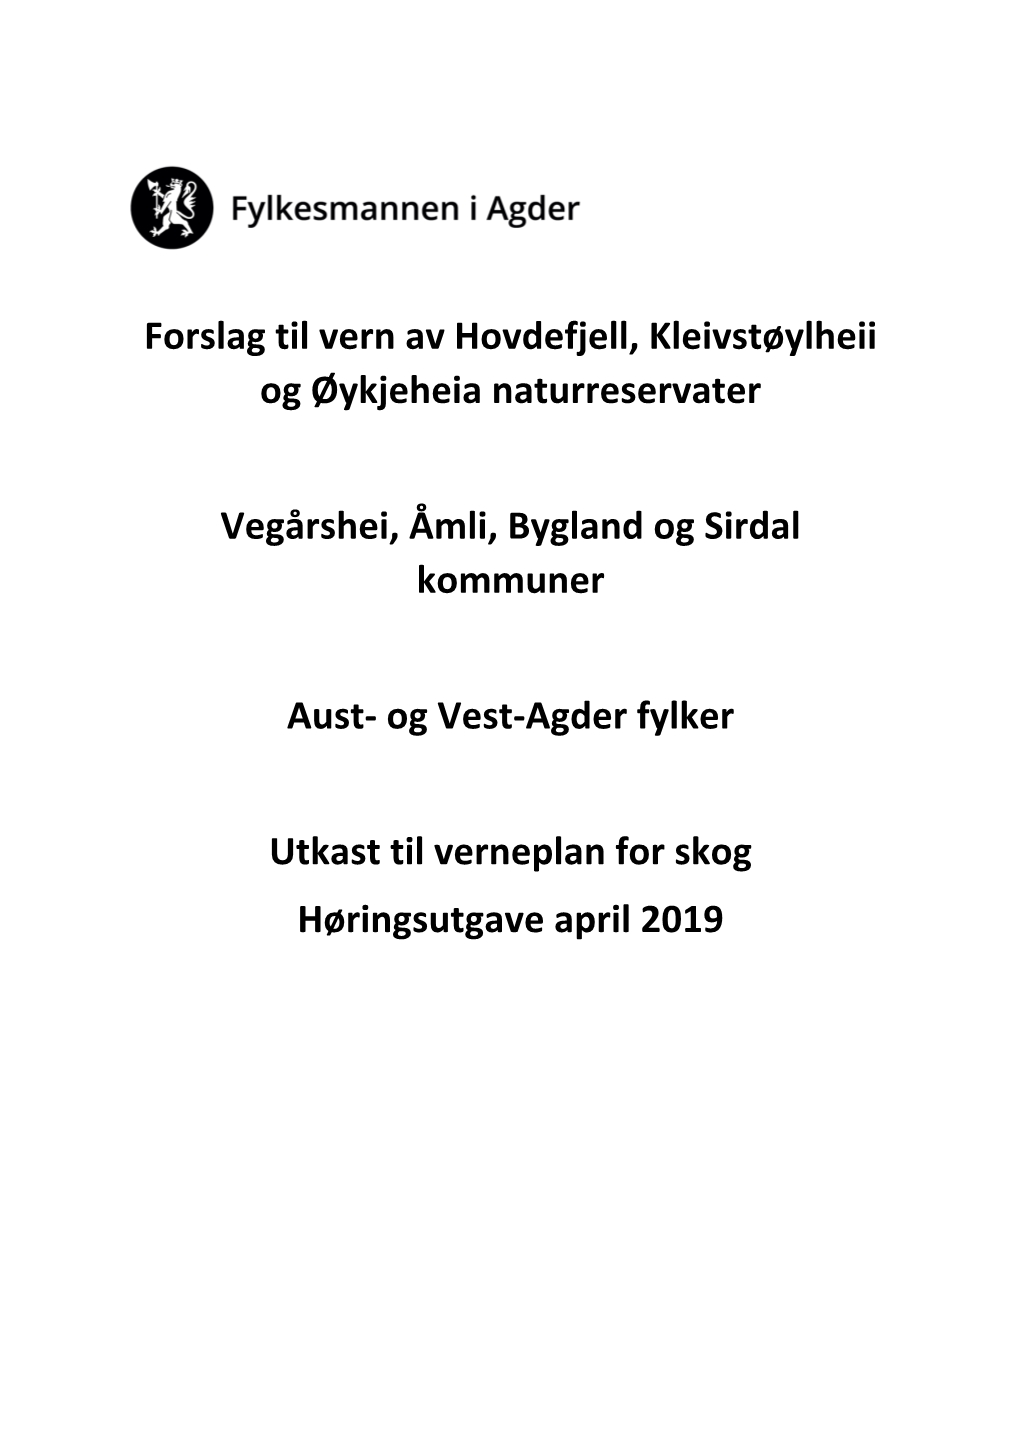 Forslag Til Vern Av Hovdefjell, Kleivstøylheii Og Øykjeheia Naturreservater